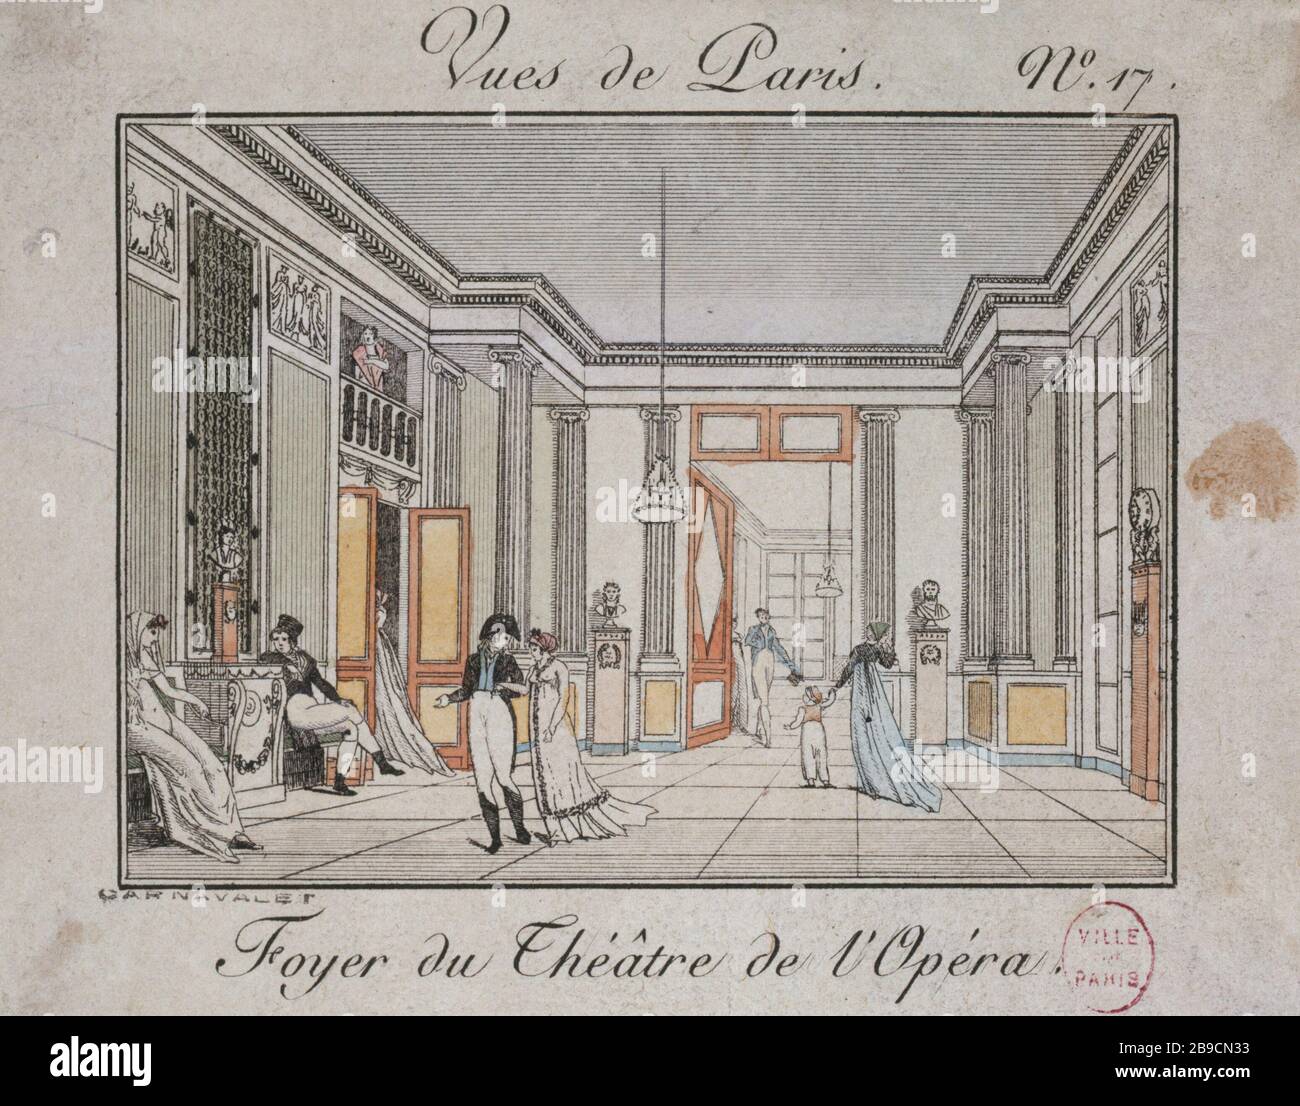 VIEWS OF PARIS, ISSUE 17 - HOME THEATER OF THE OPERA Dorgès. 'Vues de Paris, numéro 17 - foyer du théâtre de l'Opéra'. Gravure. Paris, musée Carnavalet. Stock Photo